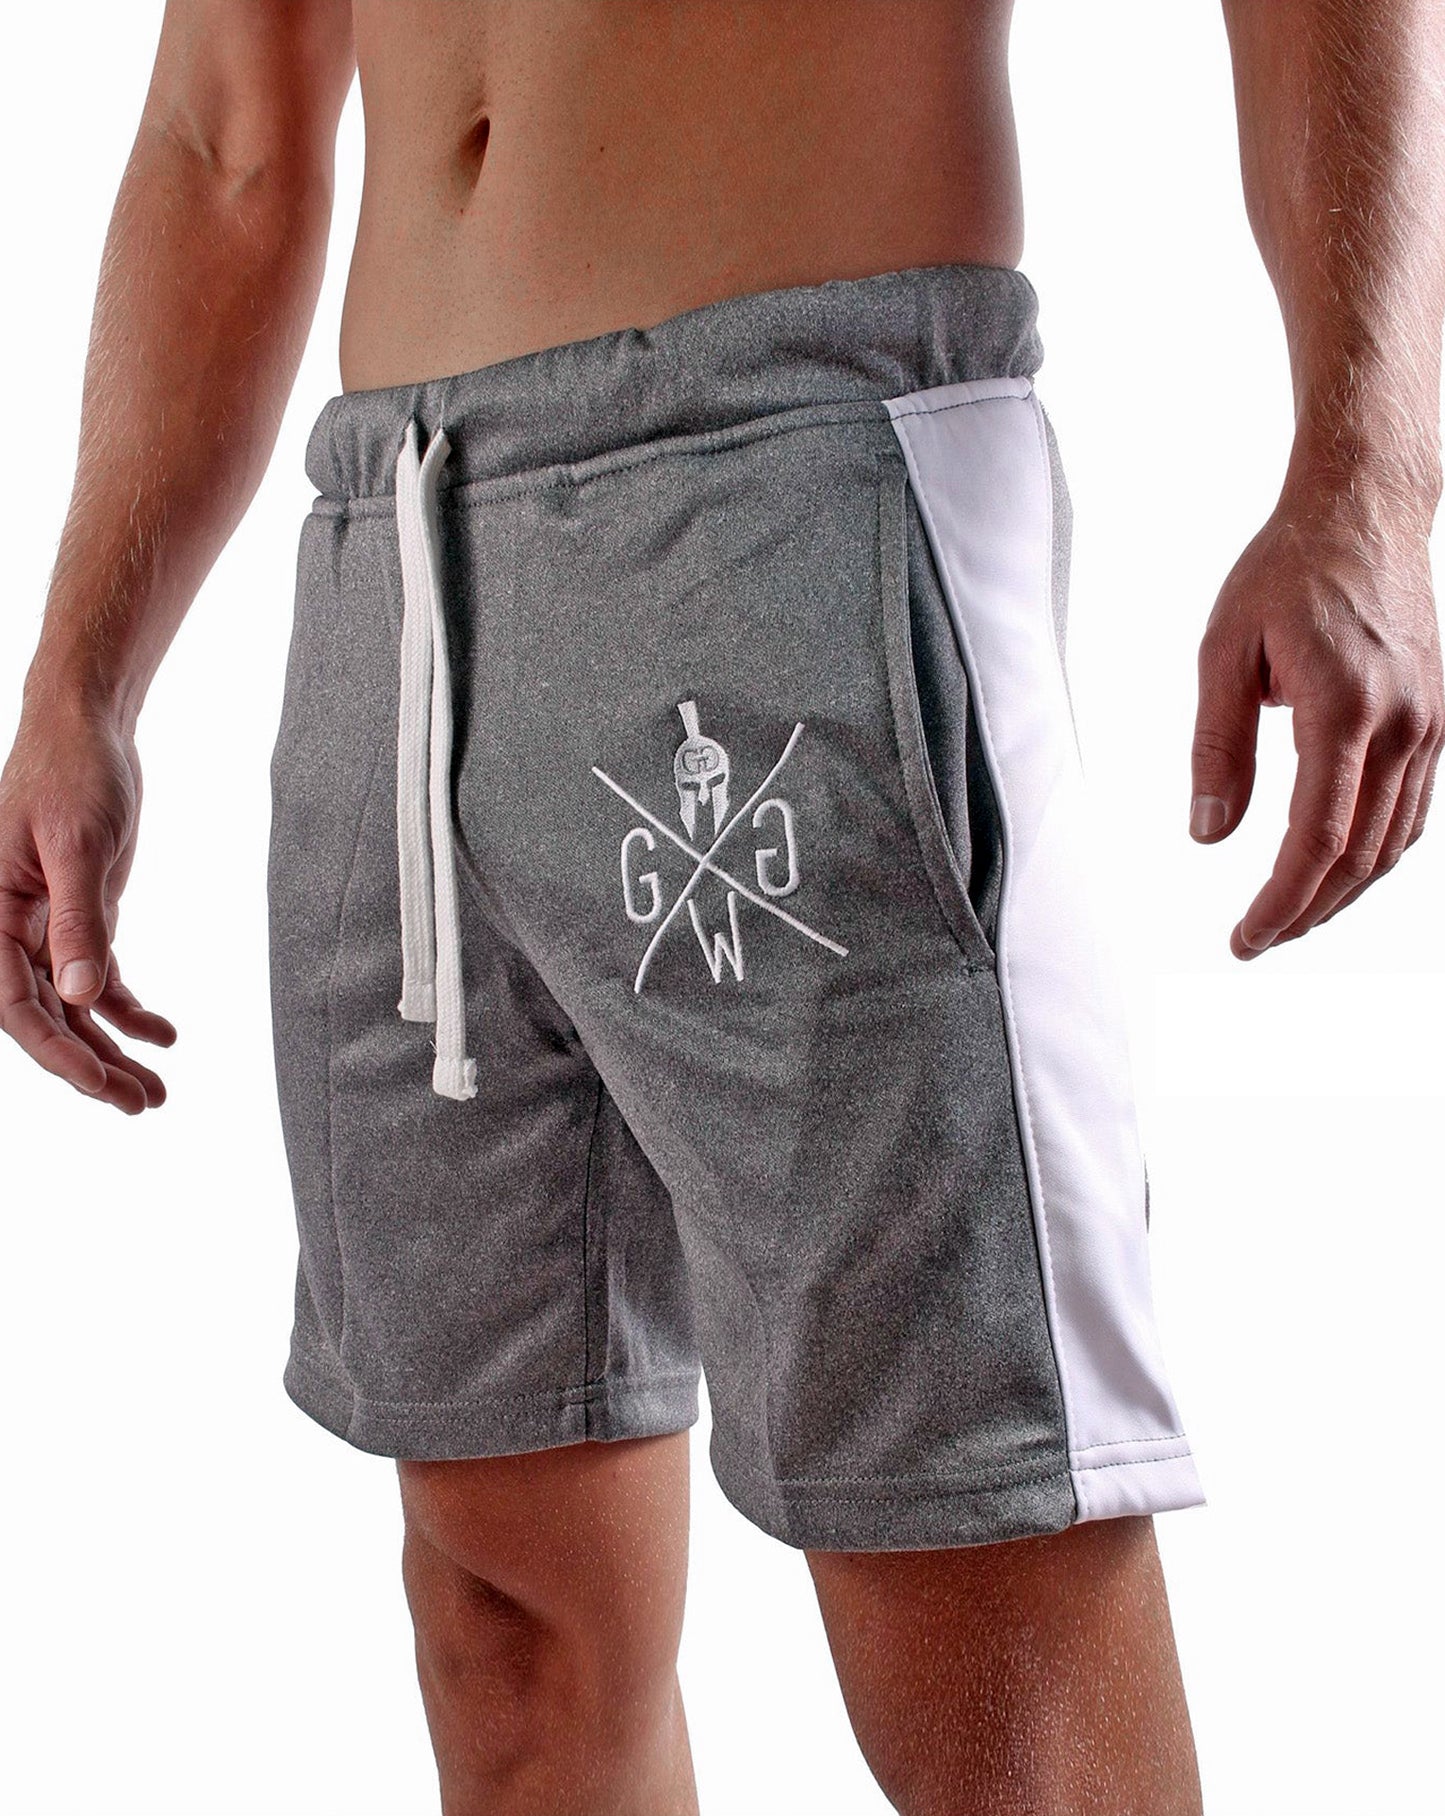 Stylische und funktionale Gym Generation Sport Shorts, ideal für Laufen, Springen und Krafttraining.